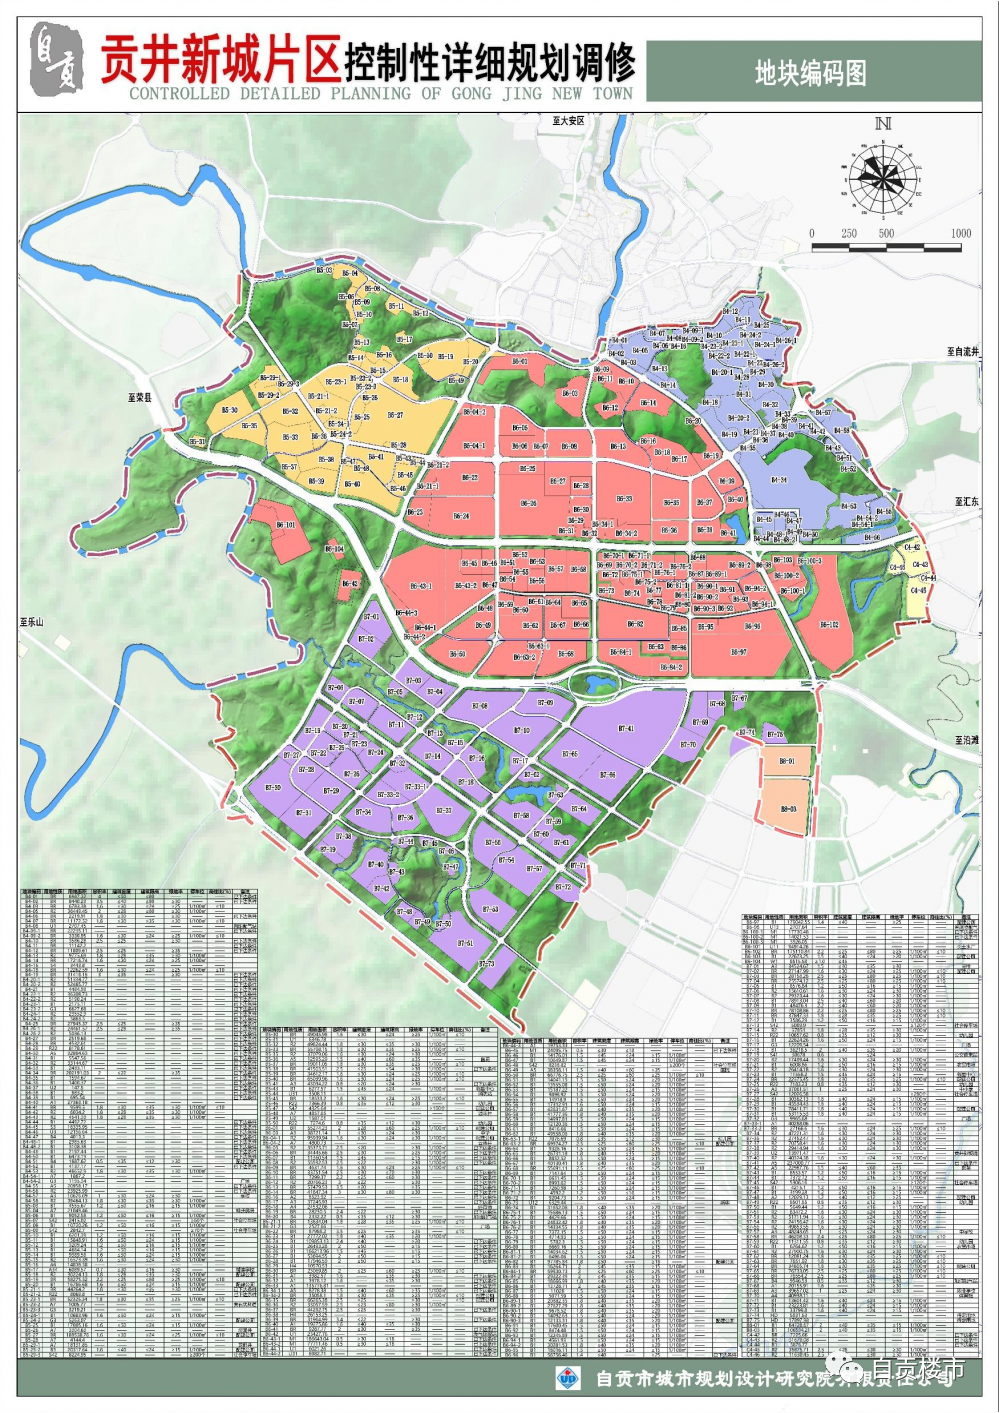 自贡这一新城片区规划最新调整细节曝光!未来发展潜力无限